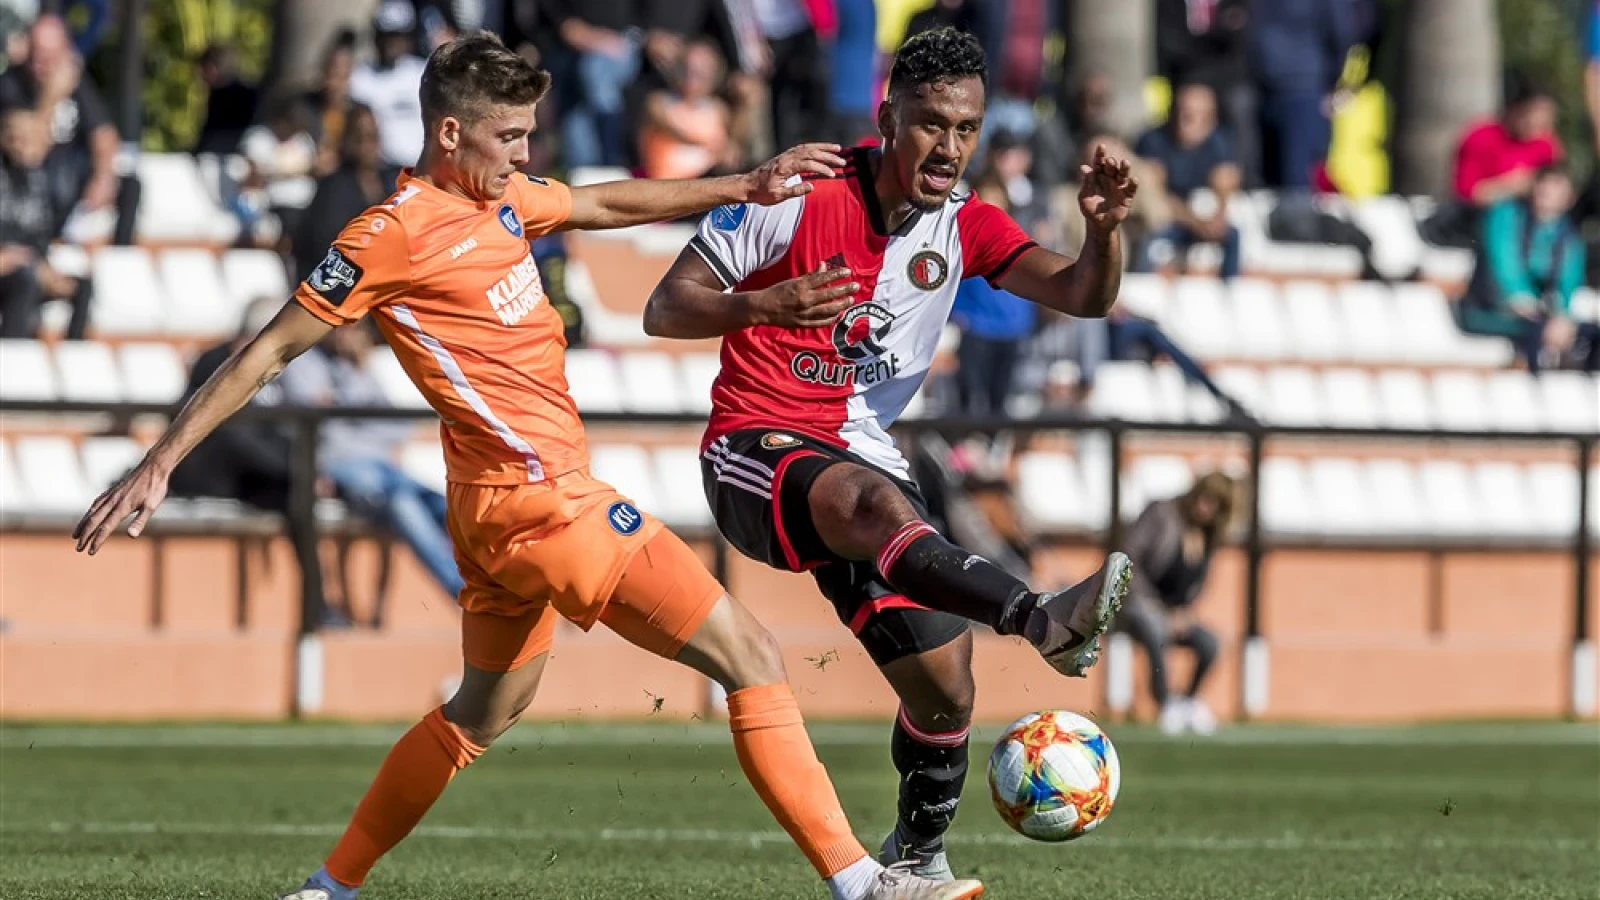 LIVE | Feyenoord - Karlsruher SC 4-2 | Einde wedstrijd